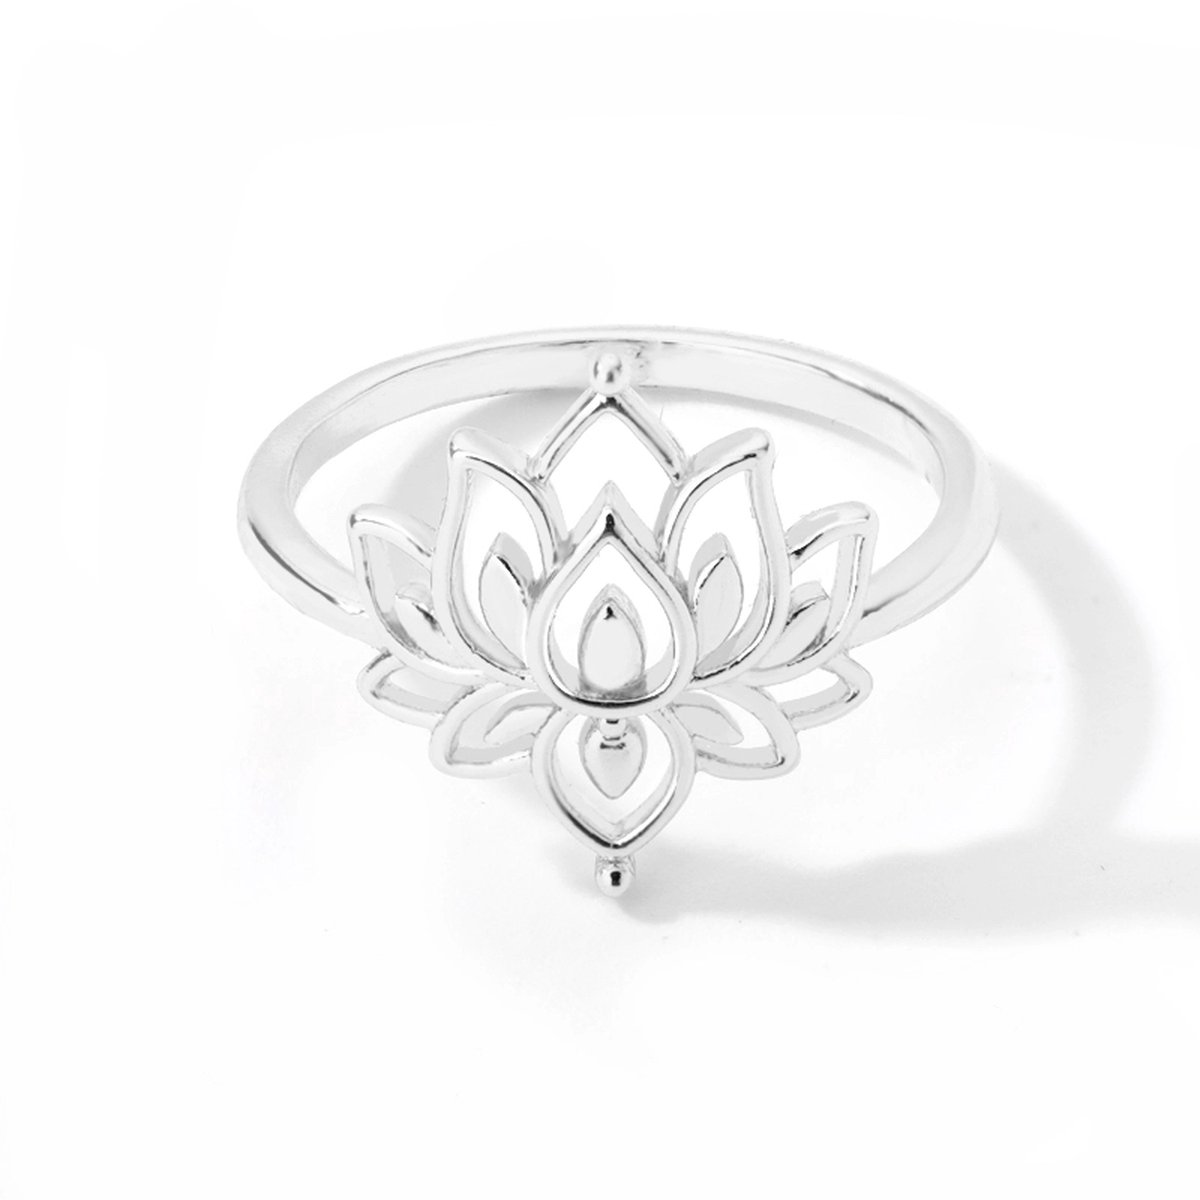 Ring stainless steel ''lotus bloem'' zilverkleurig, bohemian style, roestvrijstaal